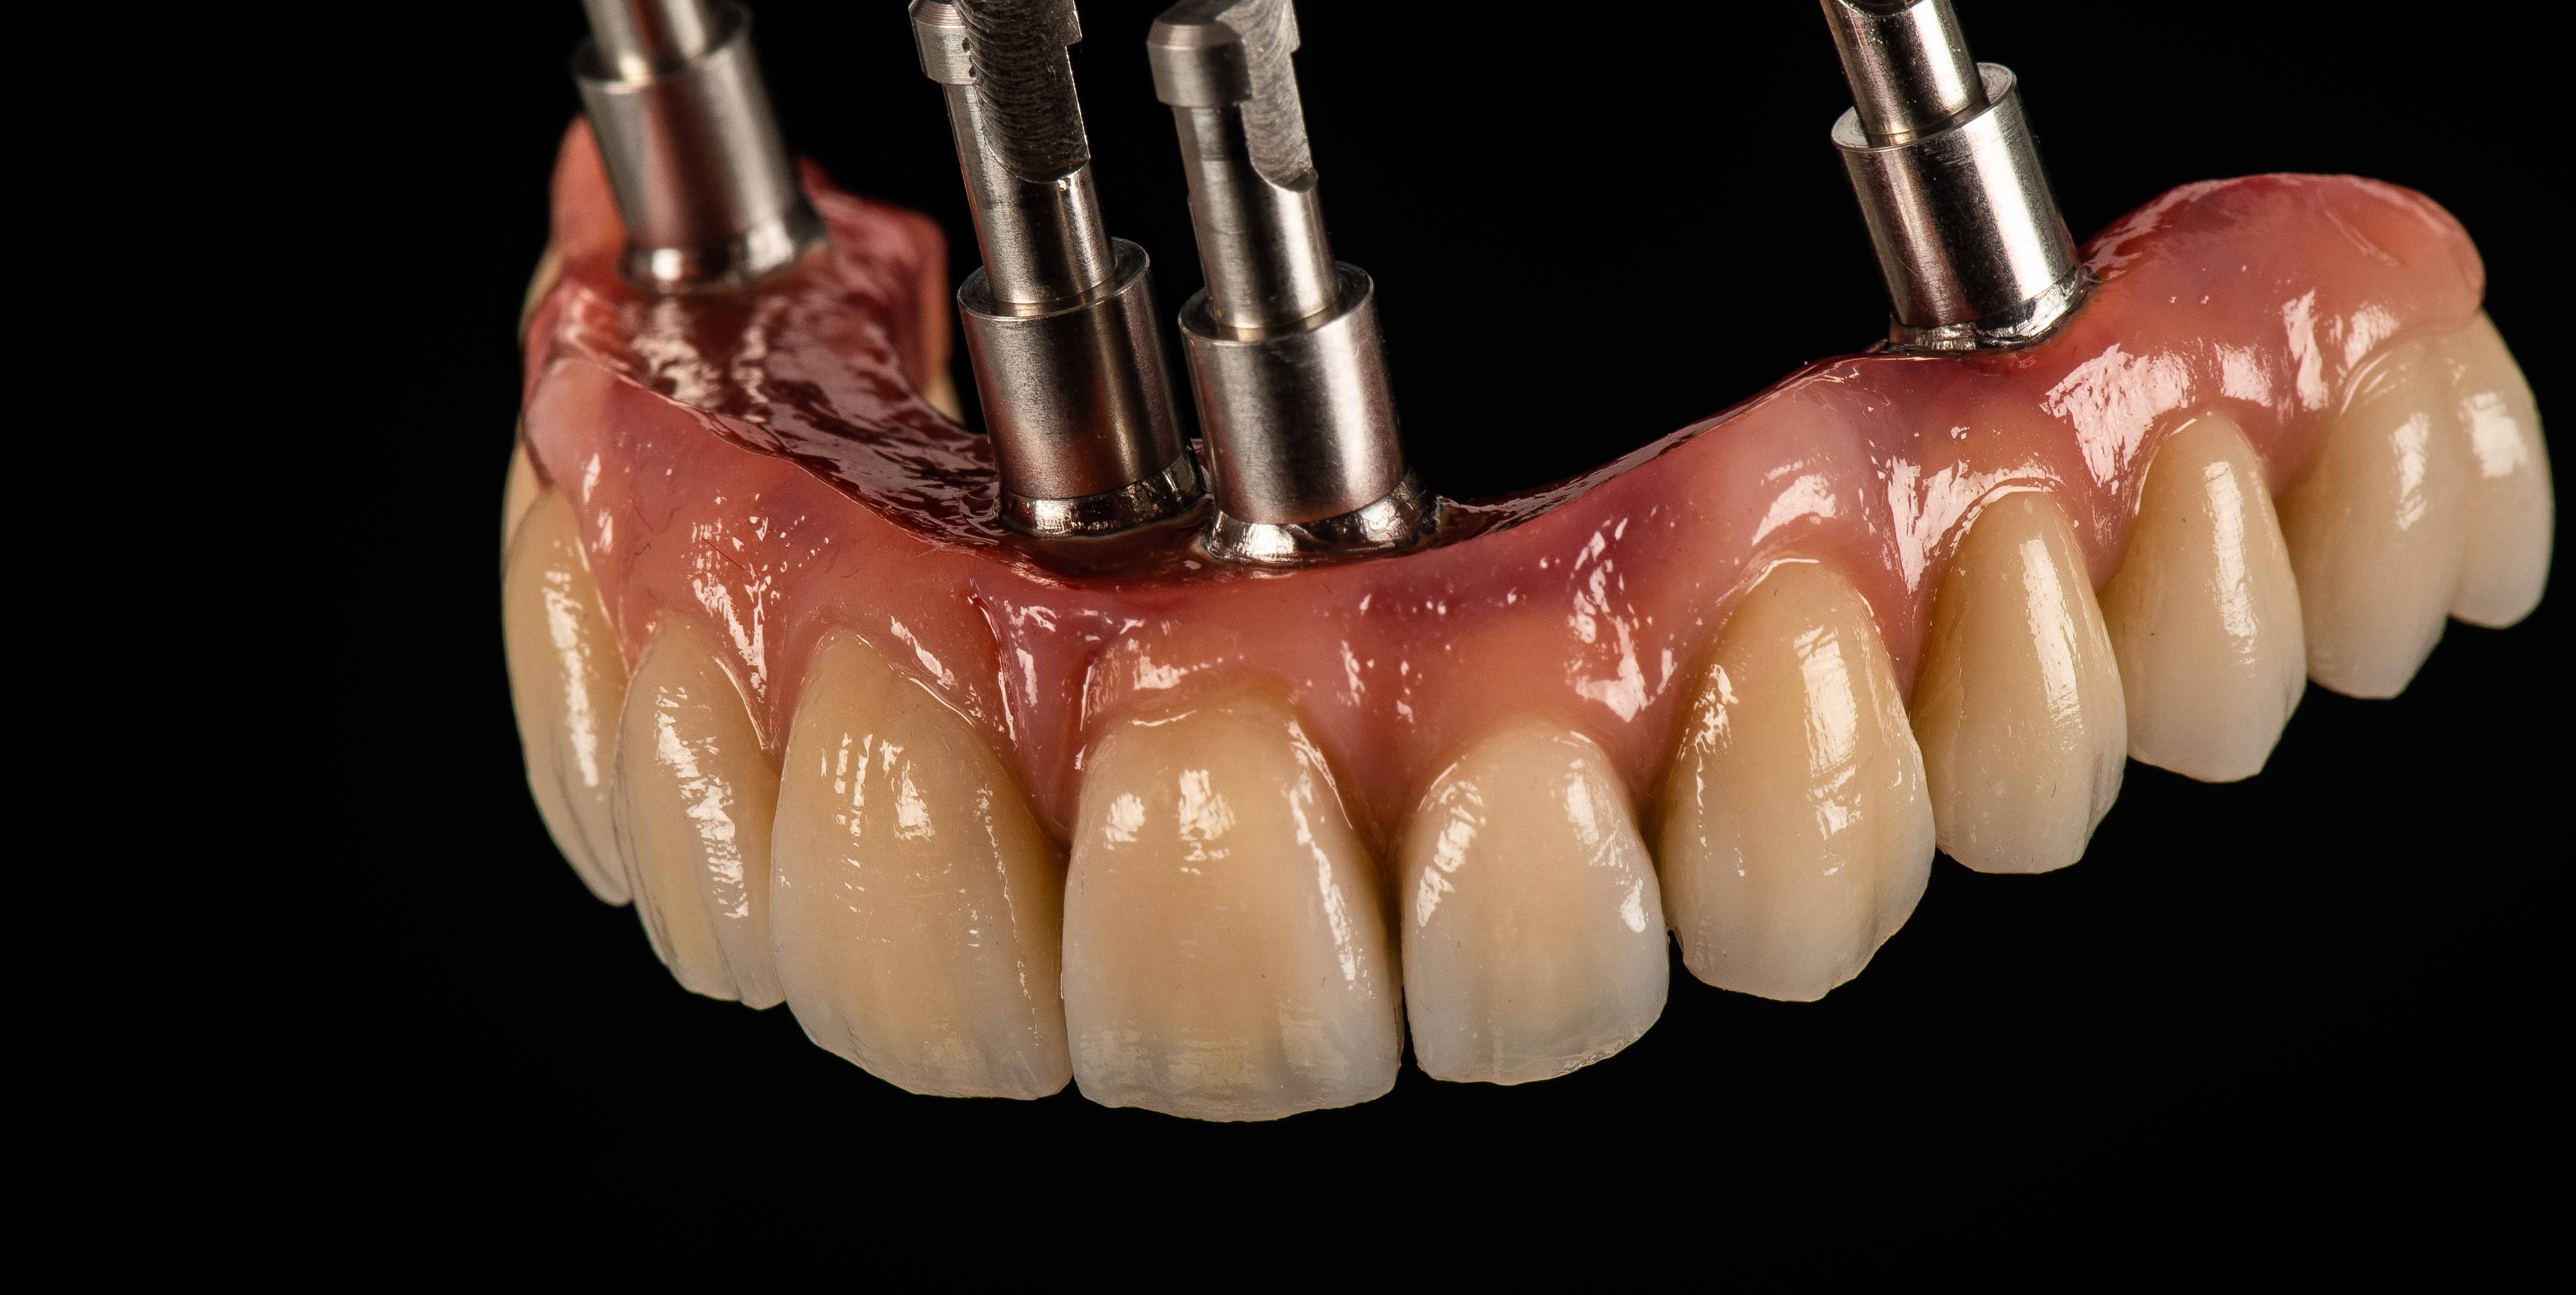 Jorge Reyes, técnico dental: “Las AURORA facilitan una mayor unión y retención de material entre el composite y la estructura”